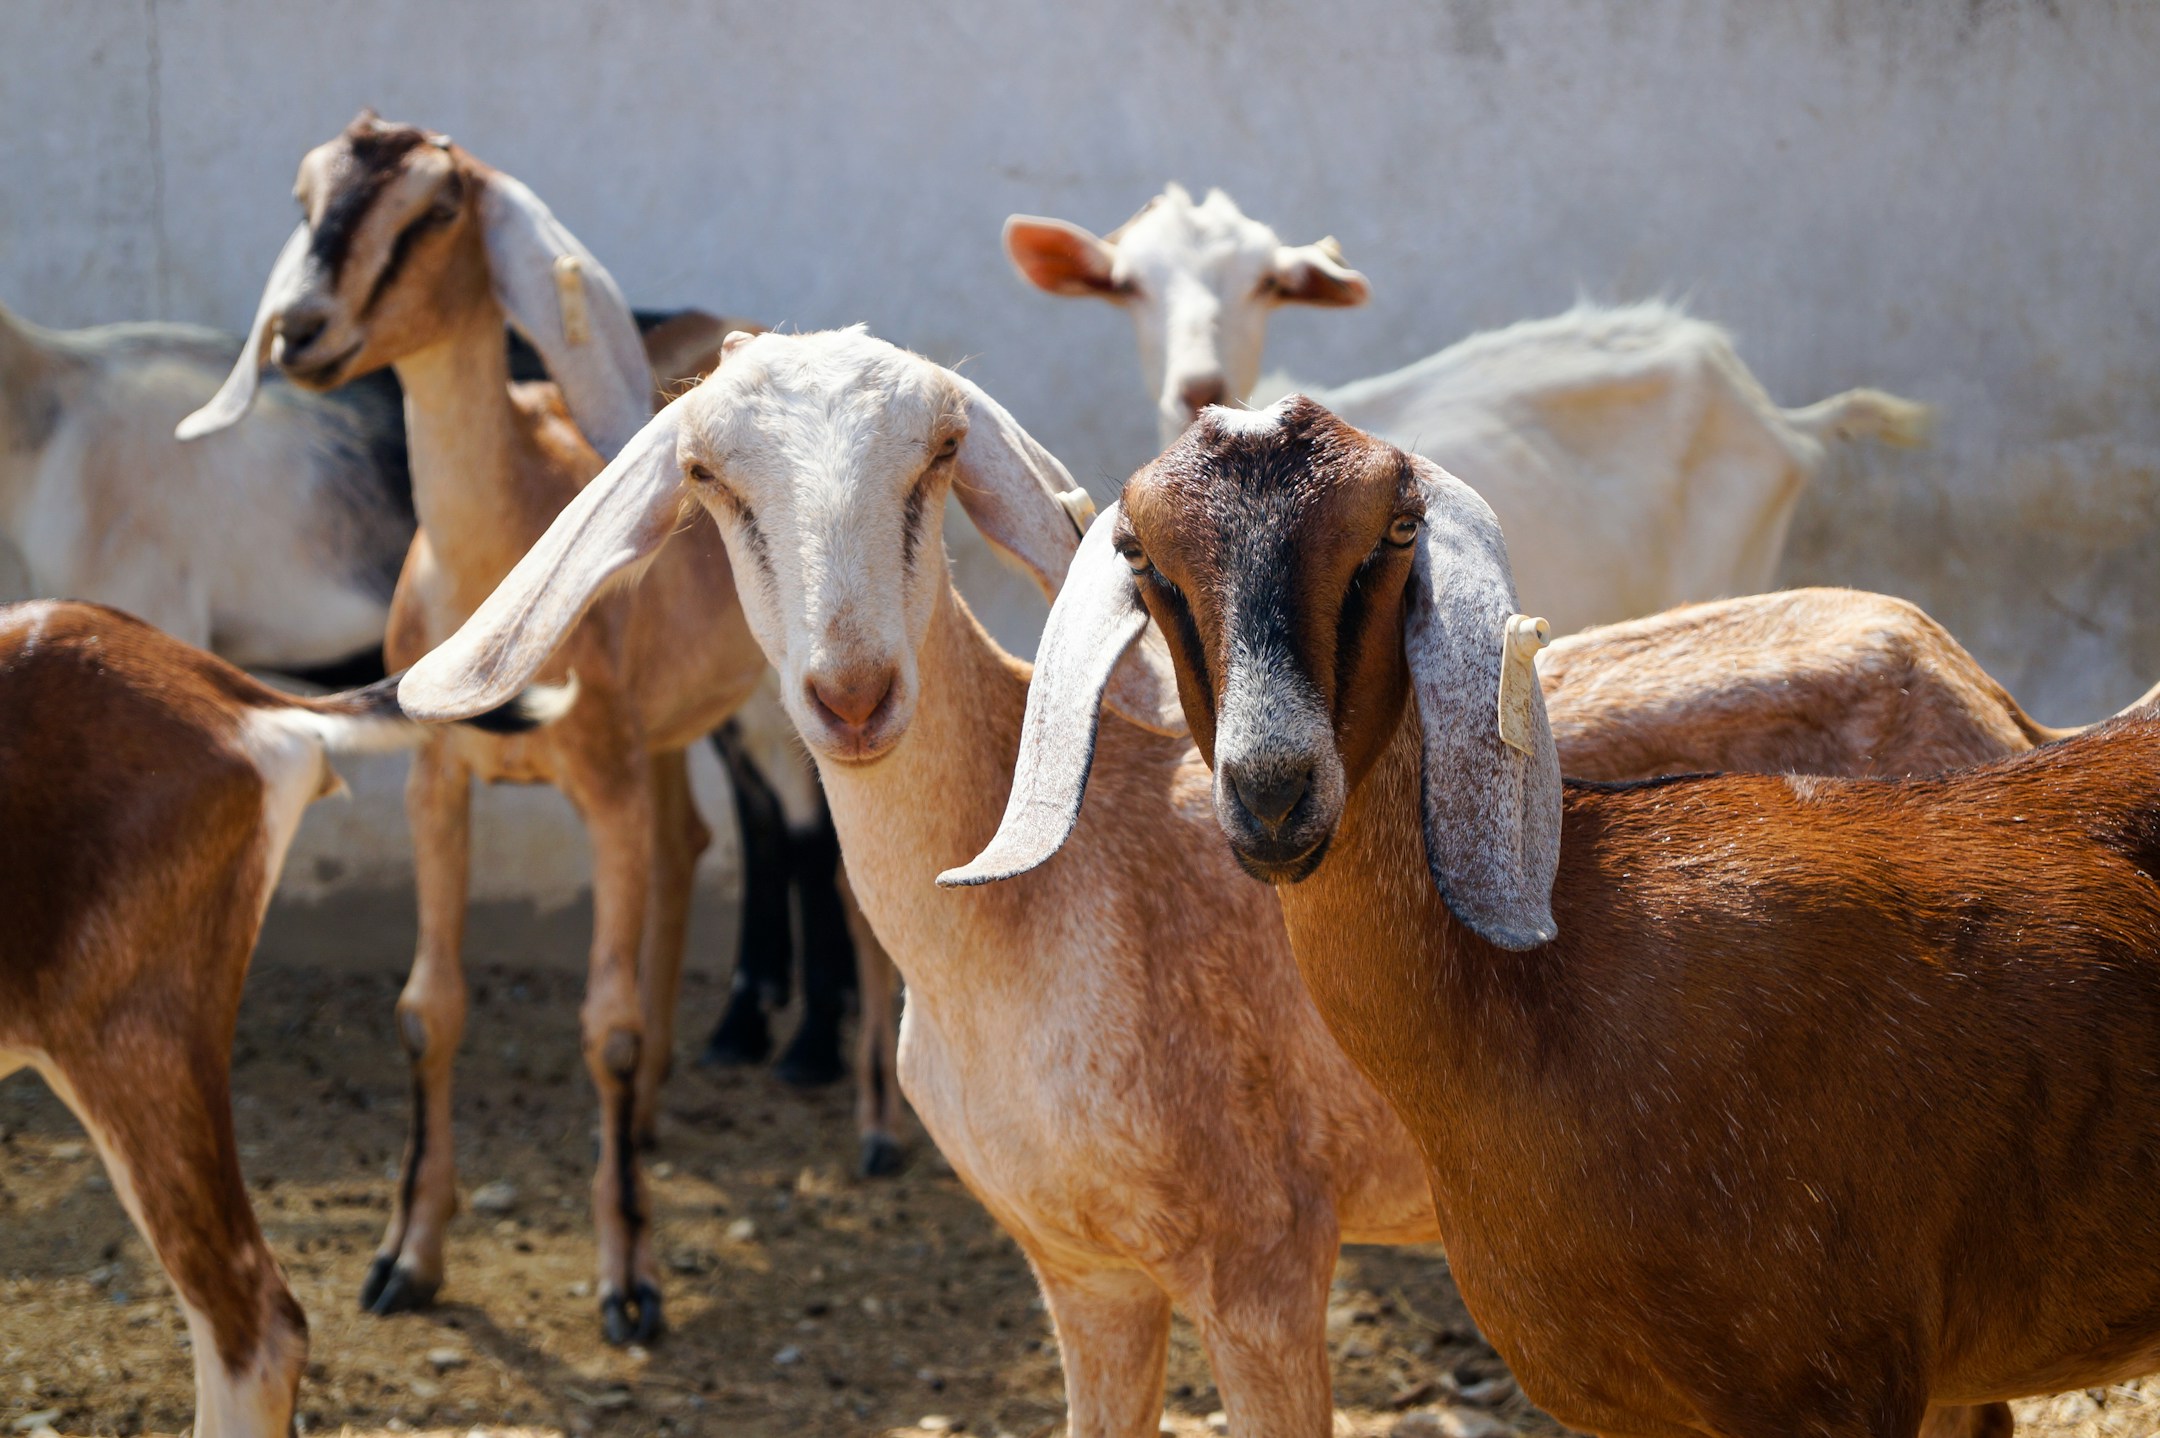 भारत में पाई जाने वाली स्वदेशी बकरियों की नस्लें